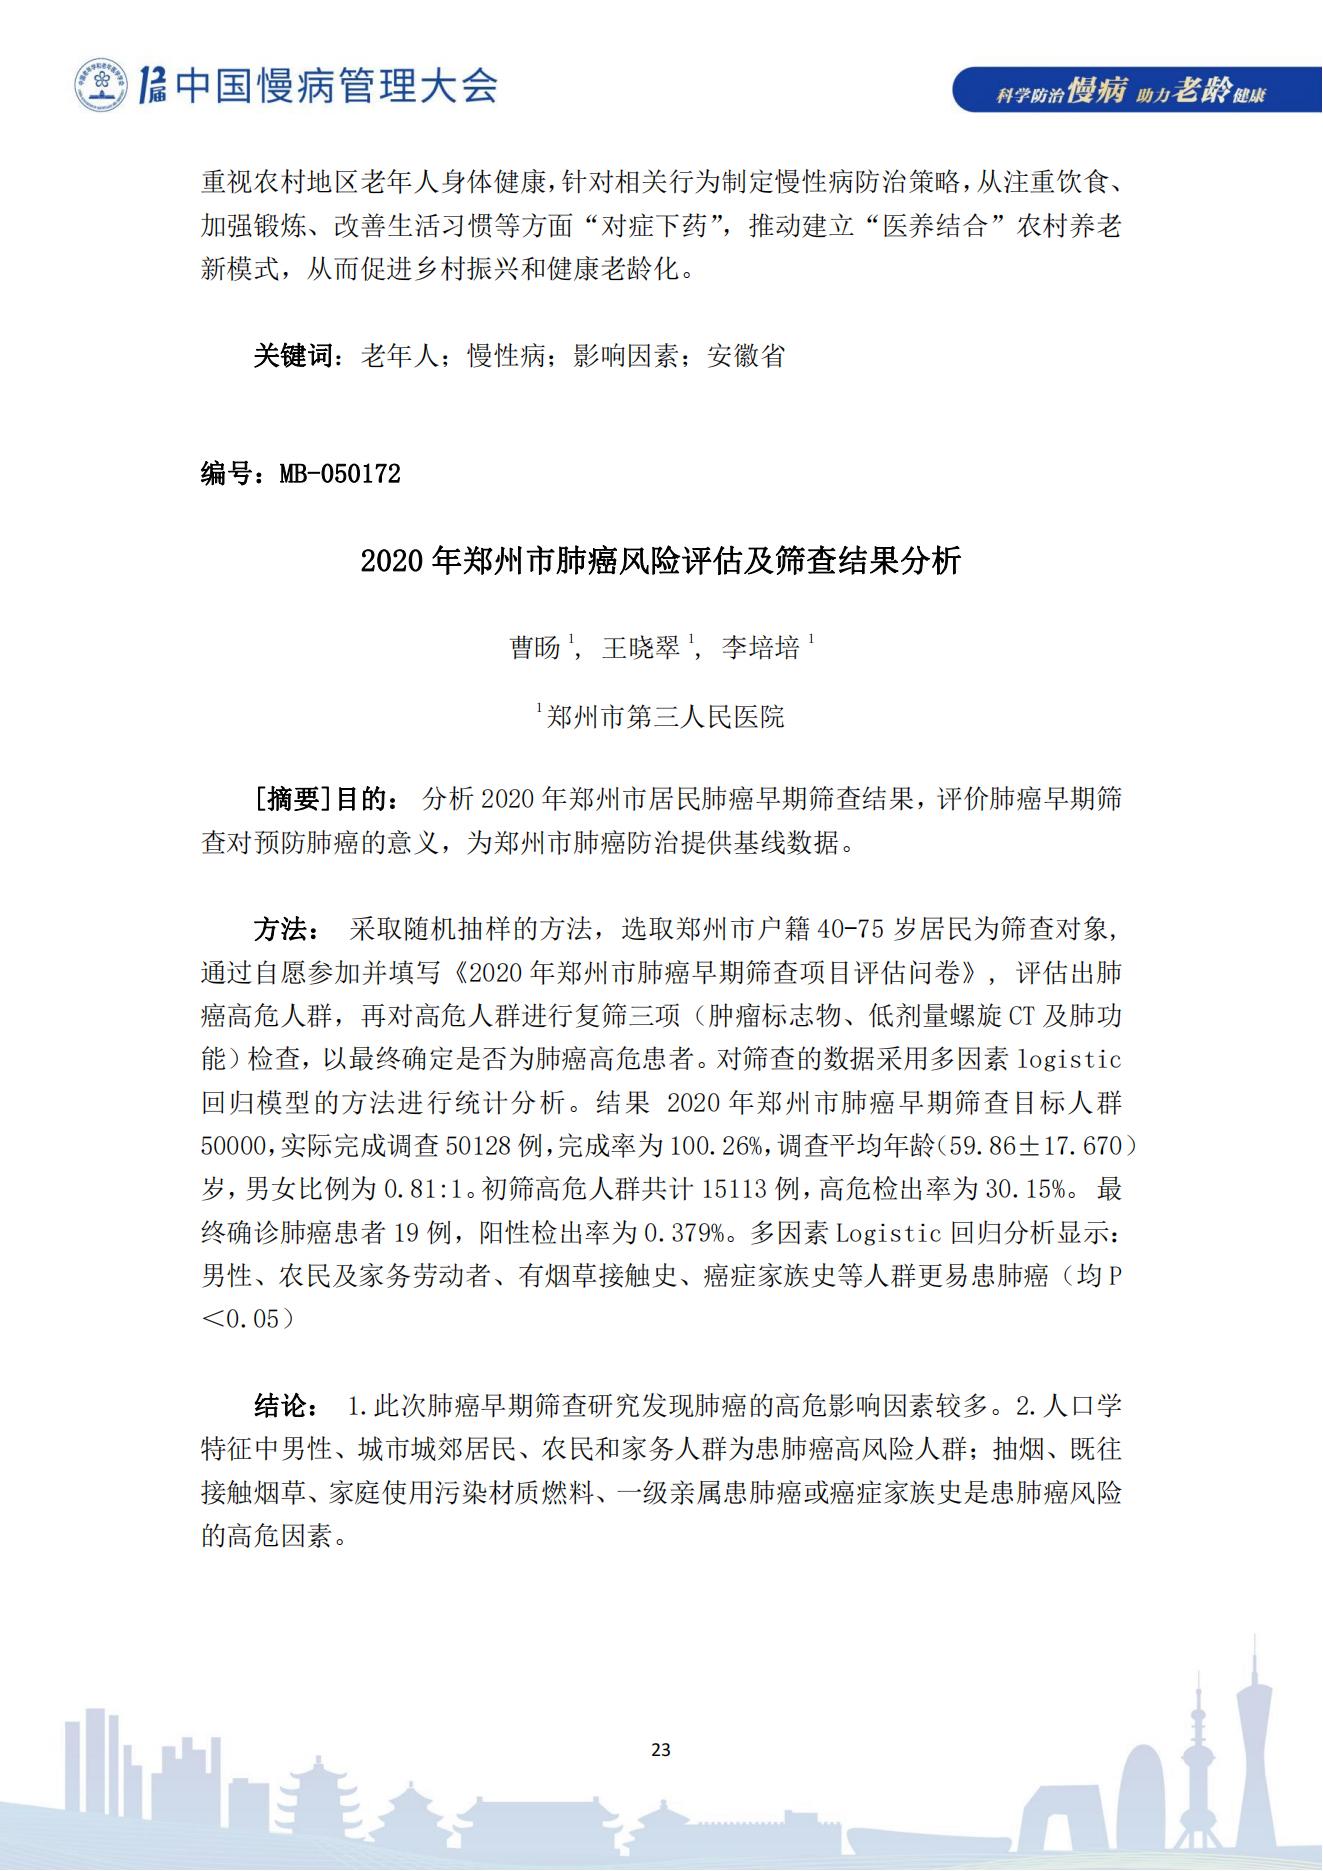 第十二届中国慢病管理大会获奖论文（电子版）0823_23.jpg